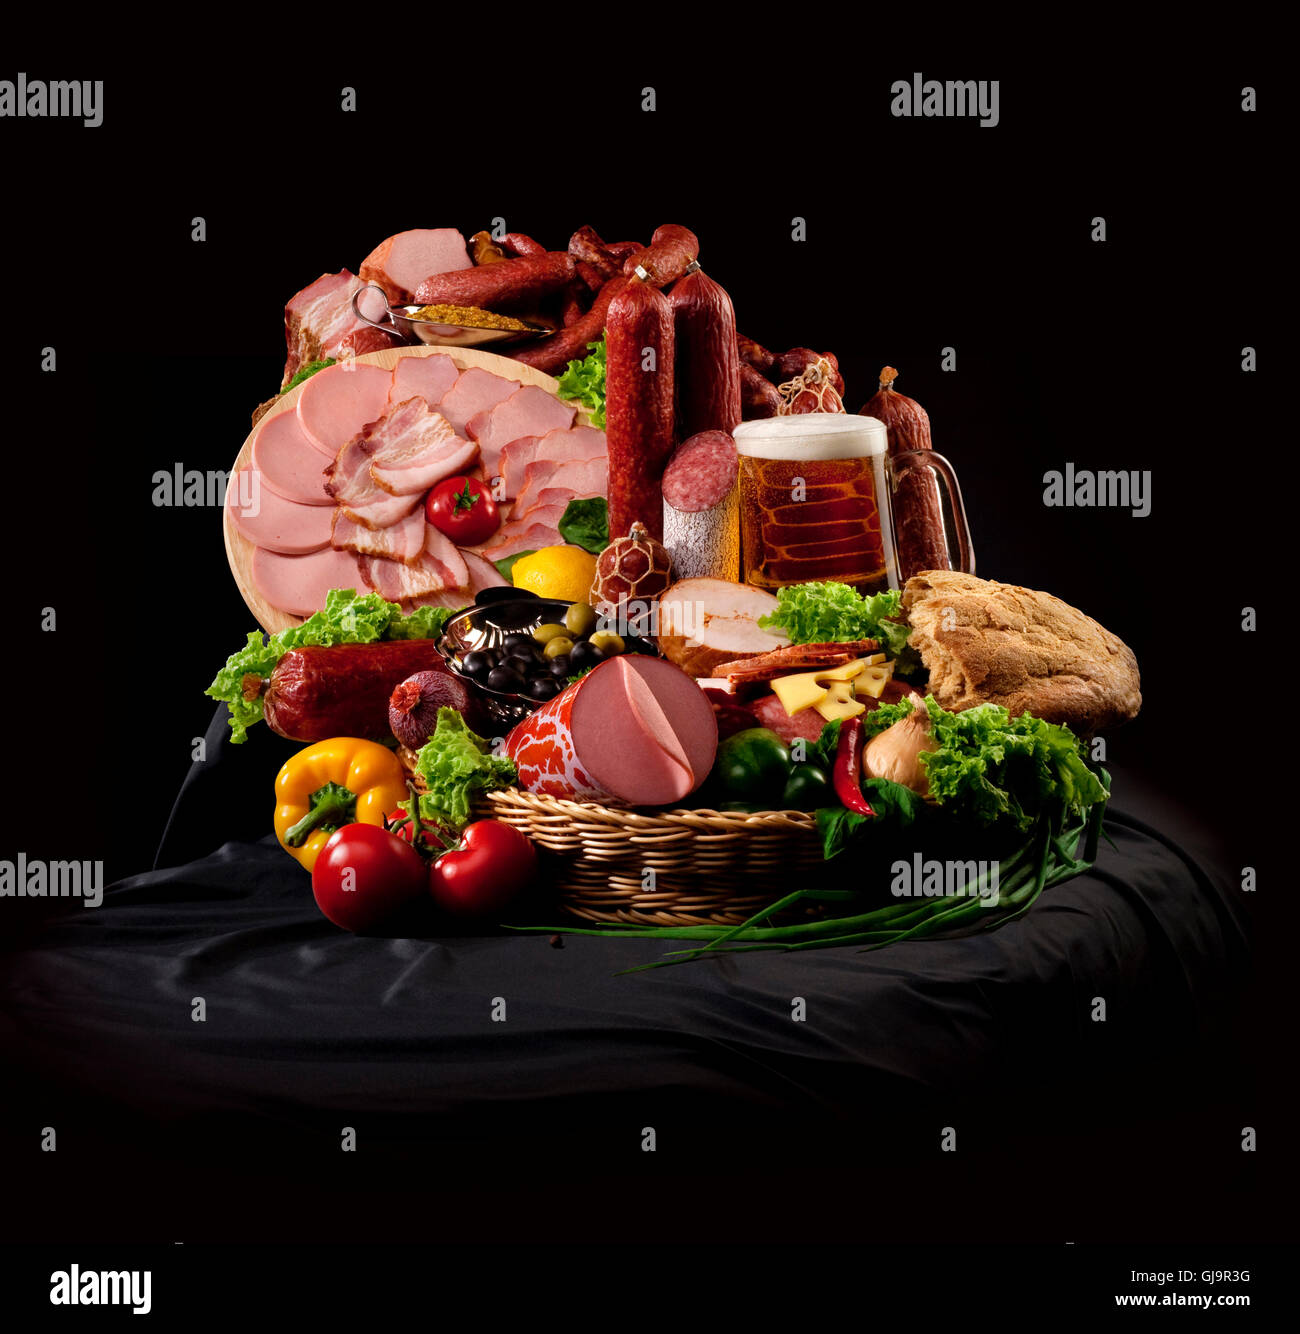 Una composizione a base di carne e verdure con birra Foto Stock